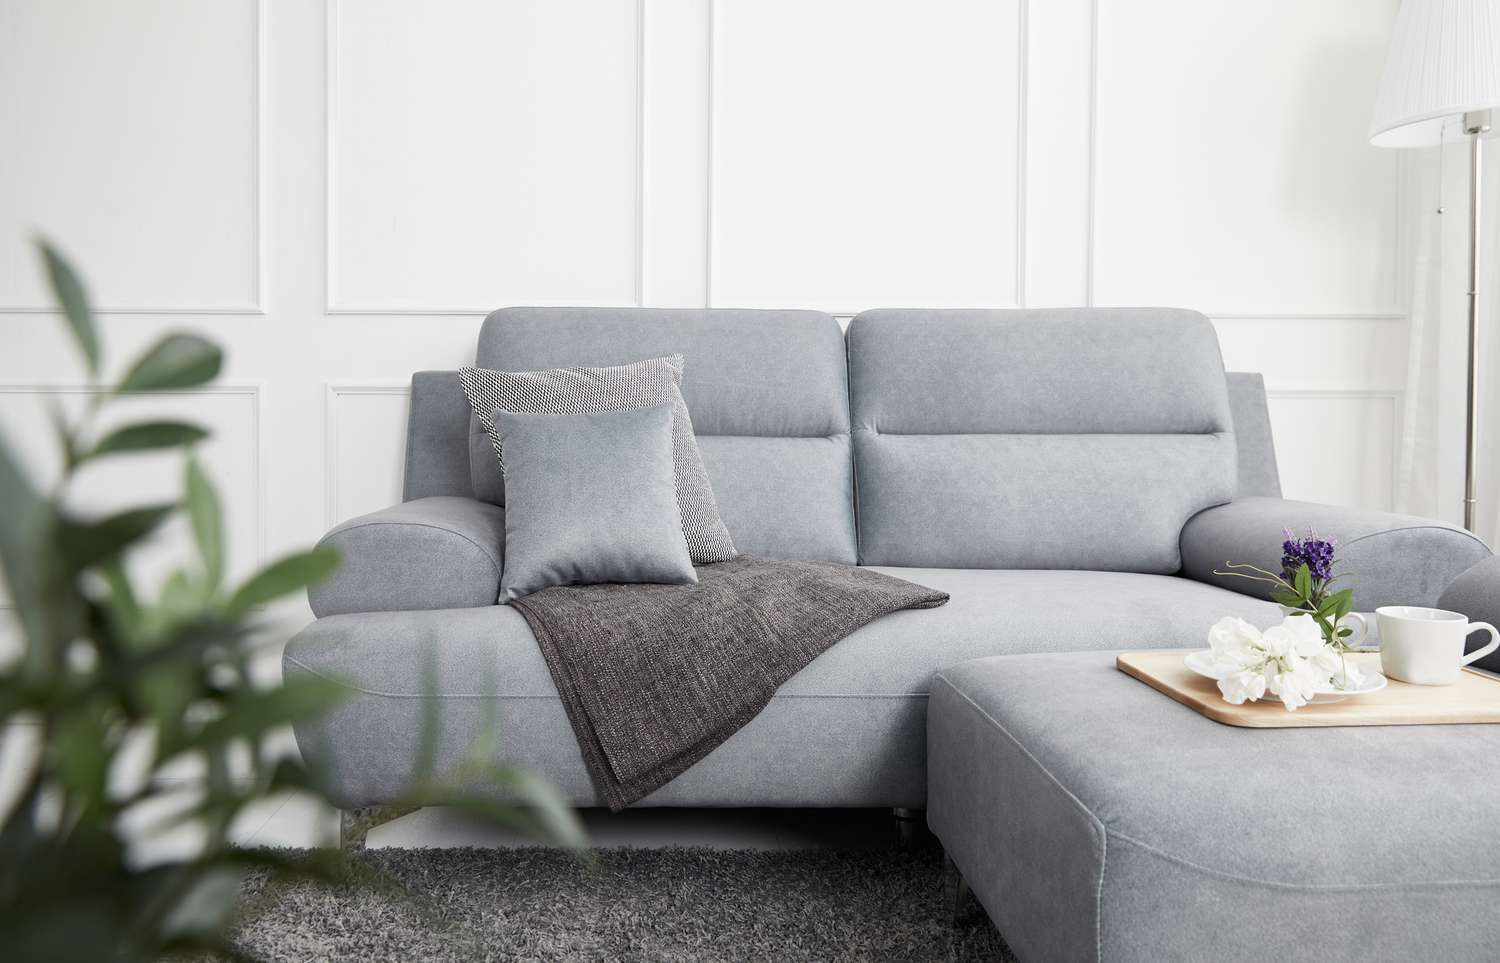 Sala de estar em estilo escandinavo com sofá de tecido, mesa de sofá. imagem matinal com planta. mesa de sofá no lug.